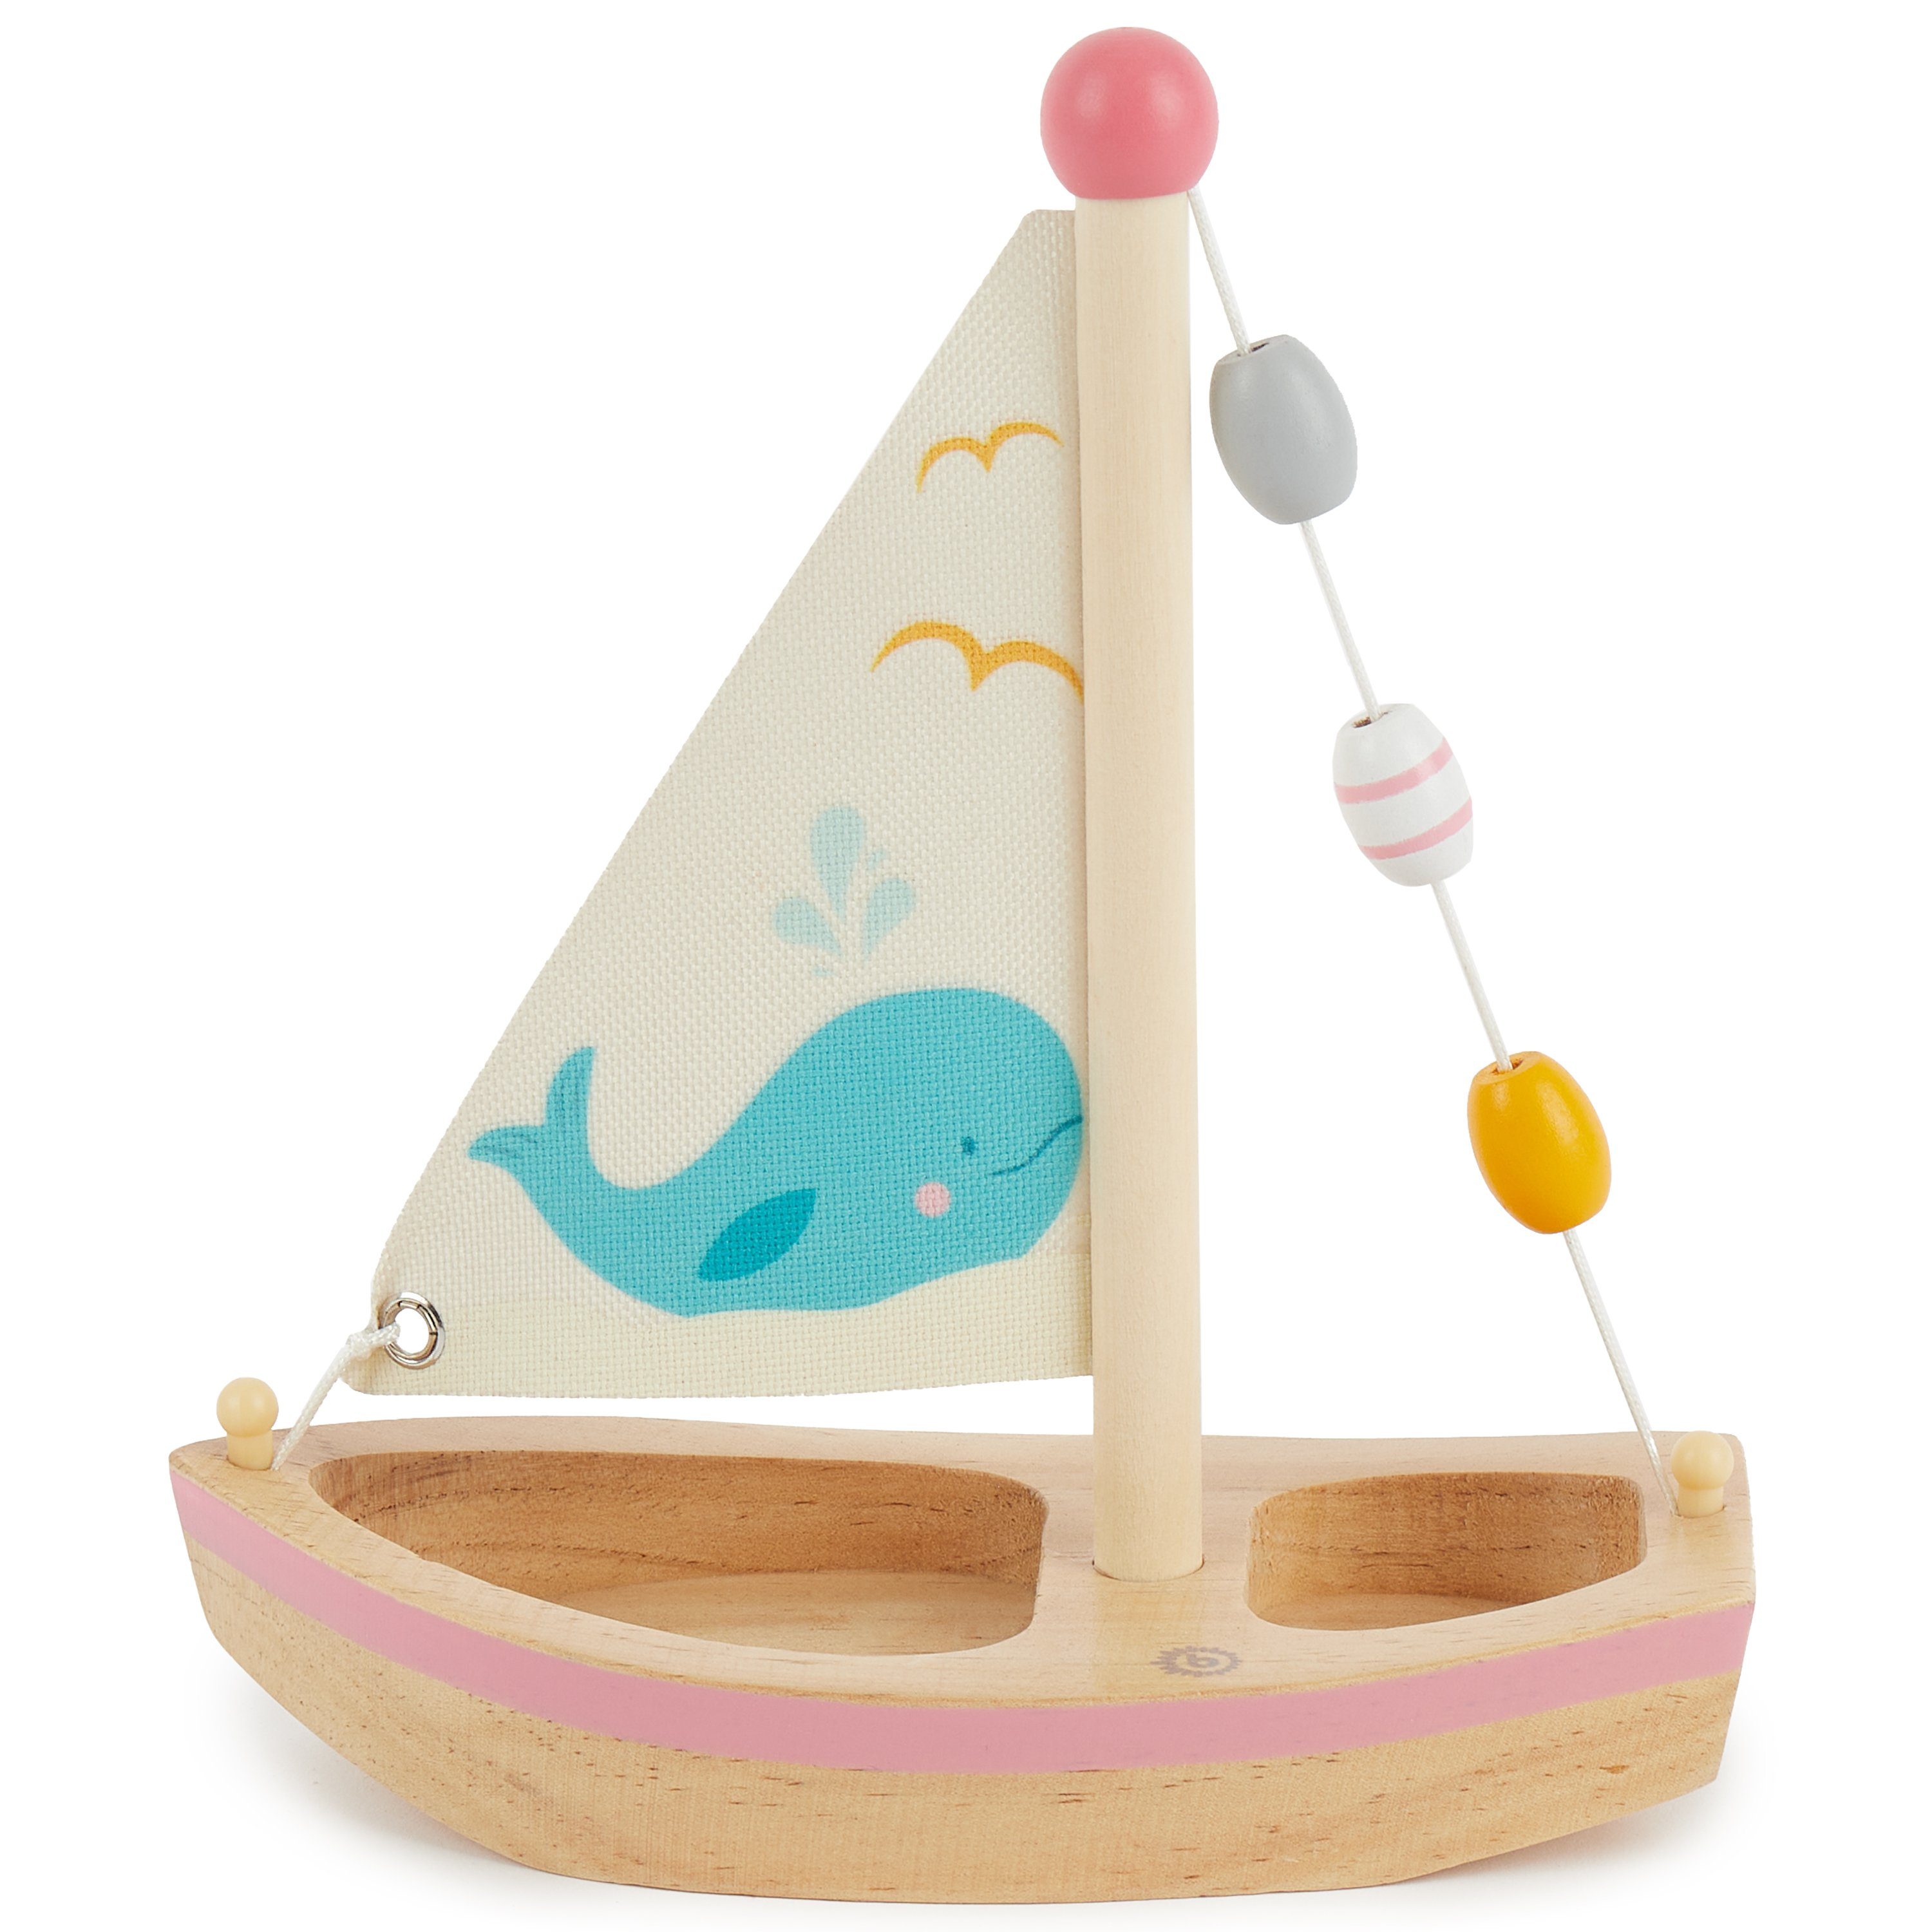 BIECO Badespielzeug Bieco Segelboot Deko Segel Boot Holzboot Spielzeug Spielzeug Holz Spielzeug Segelboot Spielsachen Spielzeug Schiff Wasser Spielzeug mit Kinder Strand für cm 20x18 Schwimmfähig Wasser